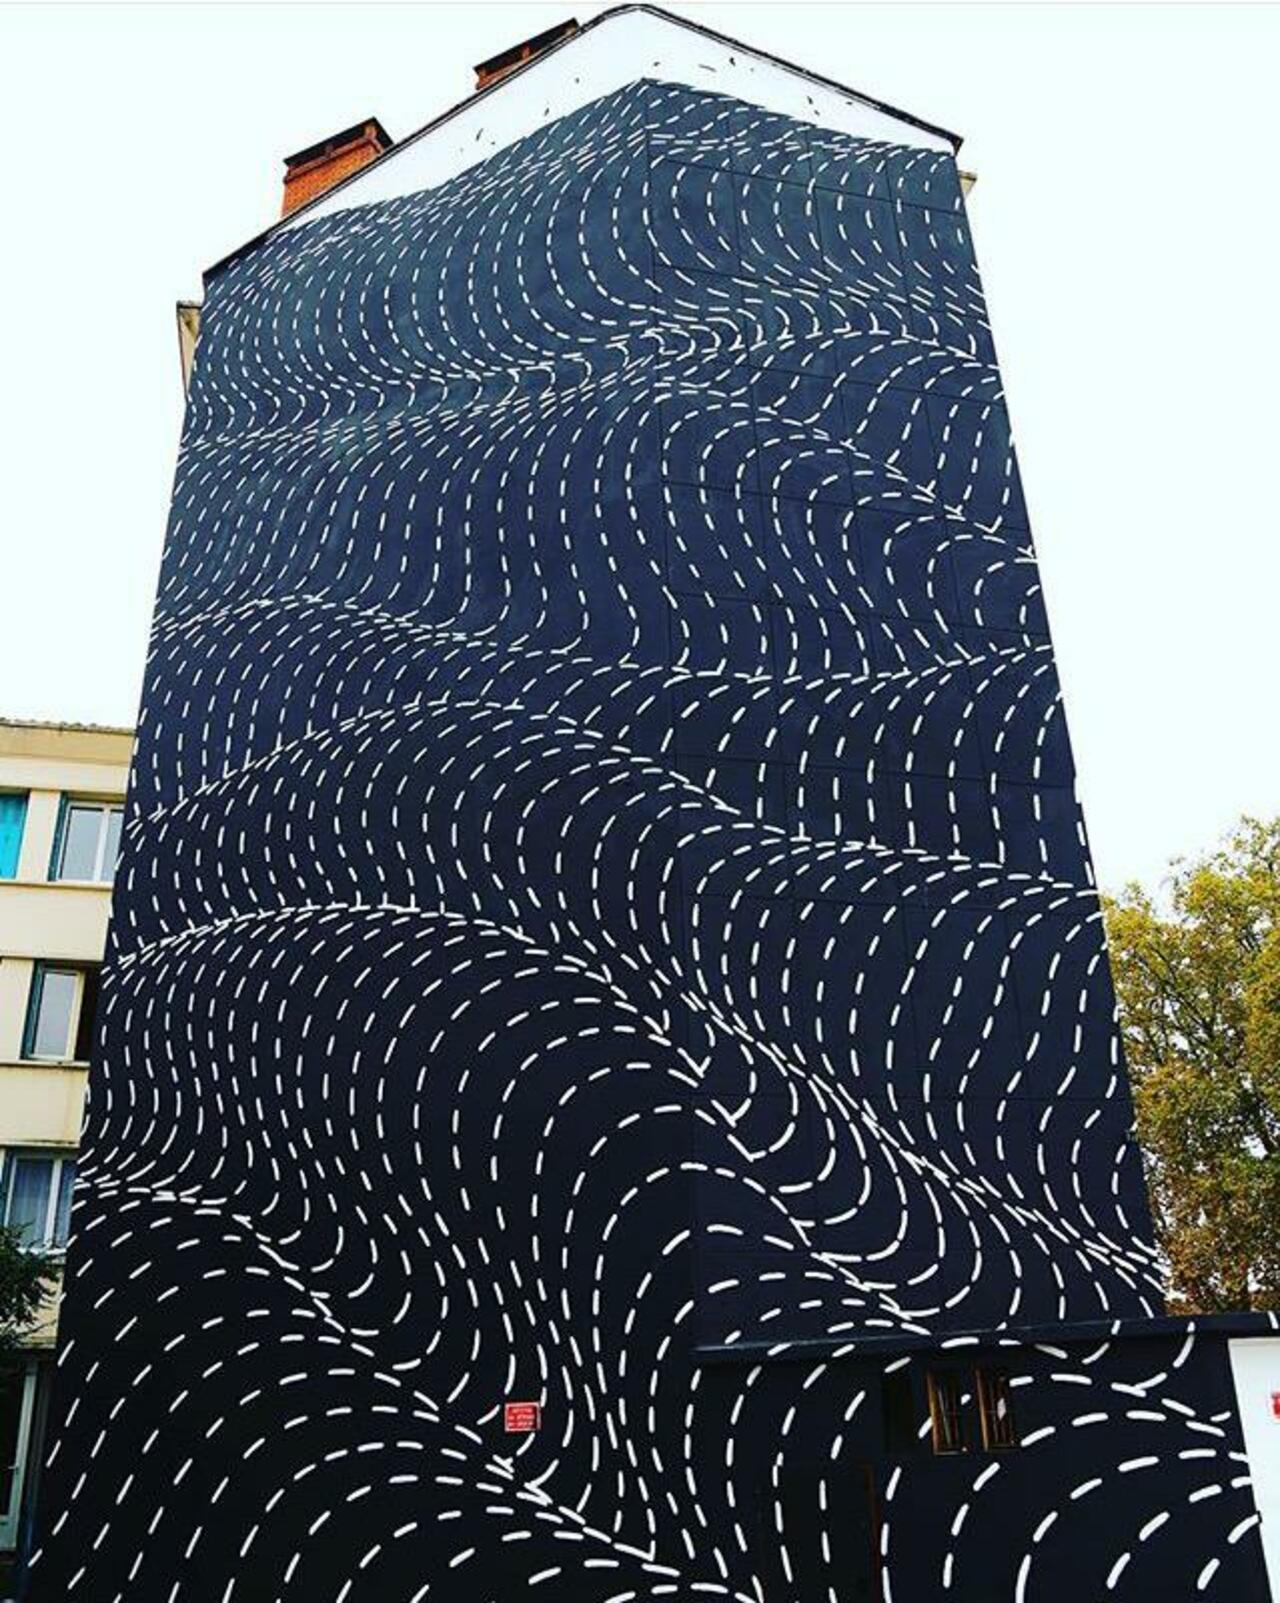 New Street Art by Brendan Monroe's for WOPS ! Festival in Toulouse, France. 

#art #graffiti #mural #streetart https://t.co/ErR9x3rNaY